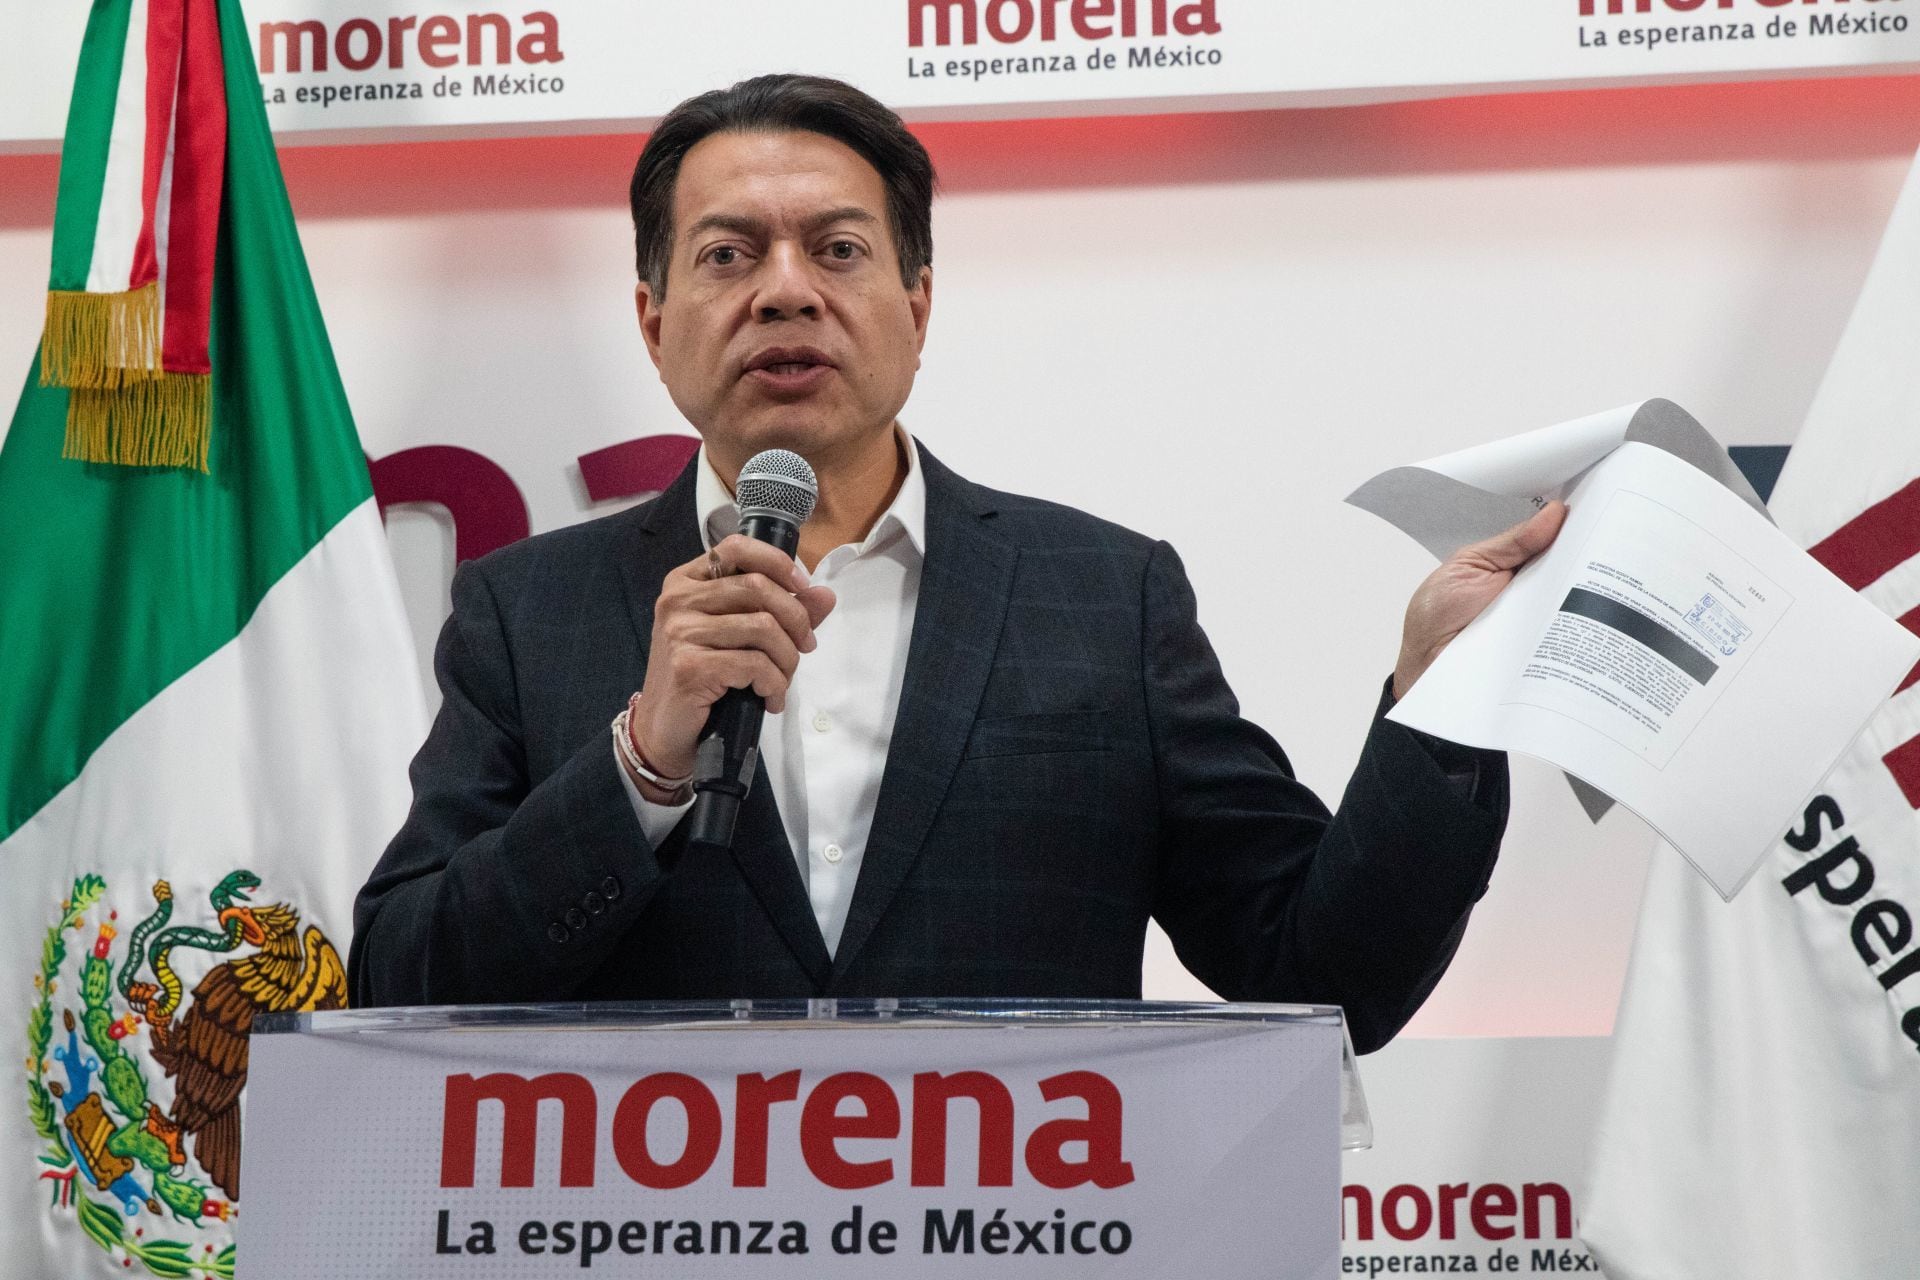 Mario Delgado will report on the pollsters to the corcholatas (MOISÉS PABLO/CUARTOSCURO.COM)